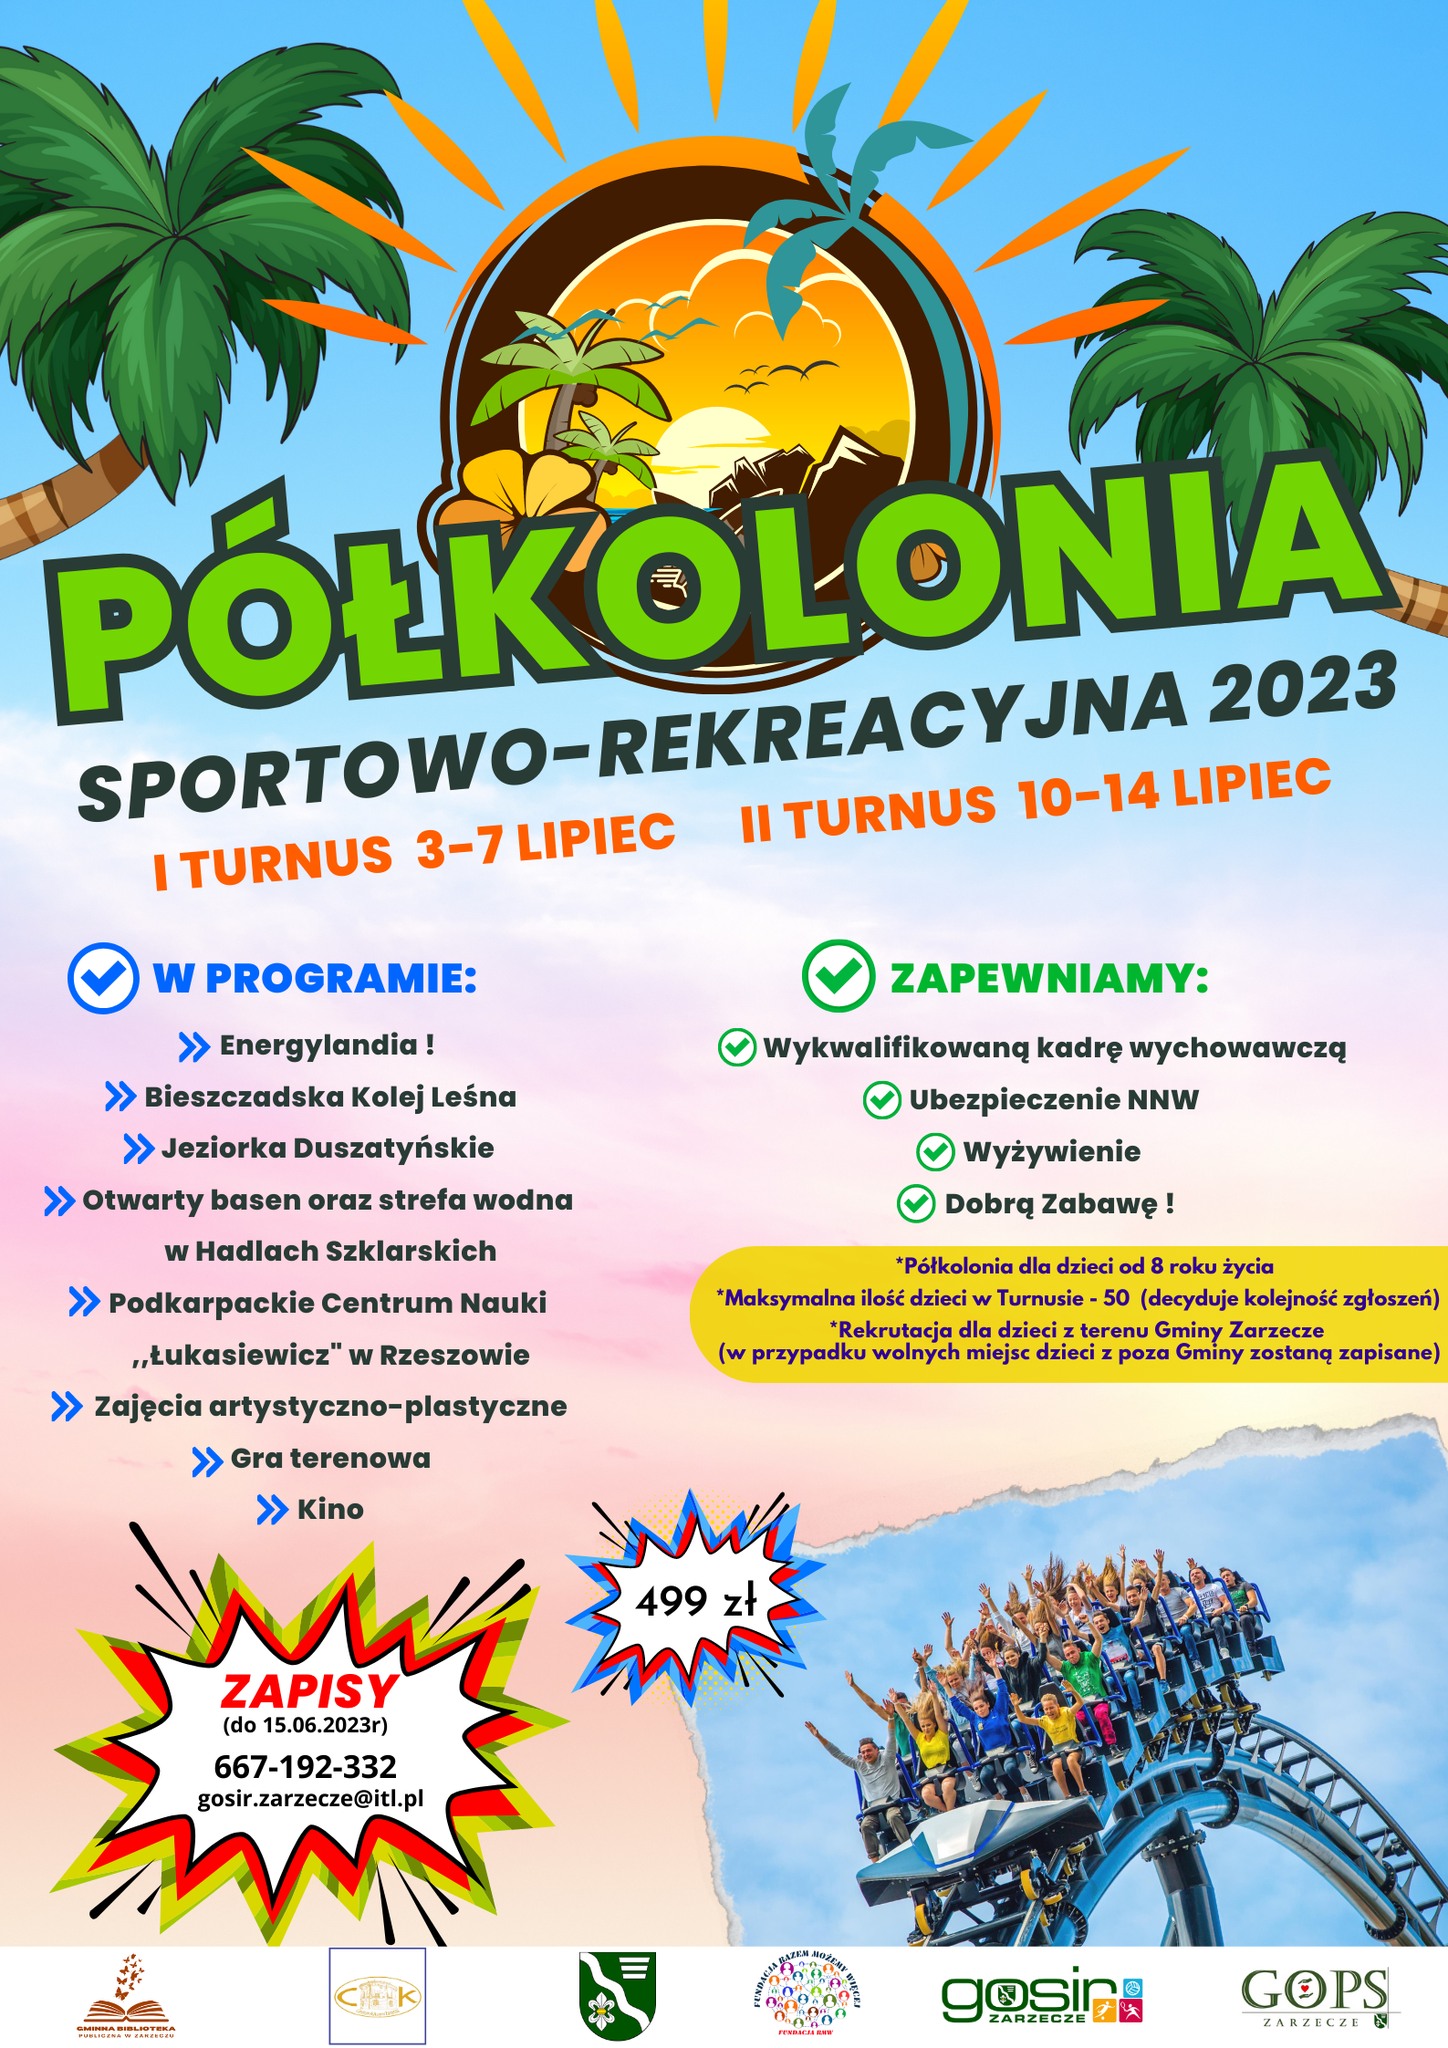 polkolonia-sportowo-rekreacyjna-2023